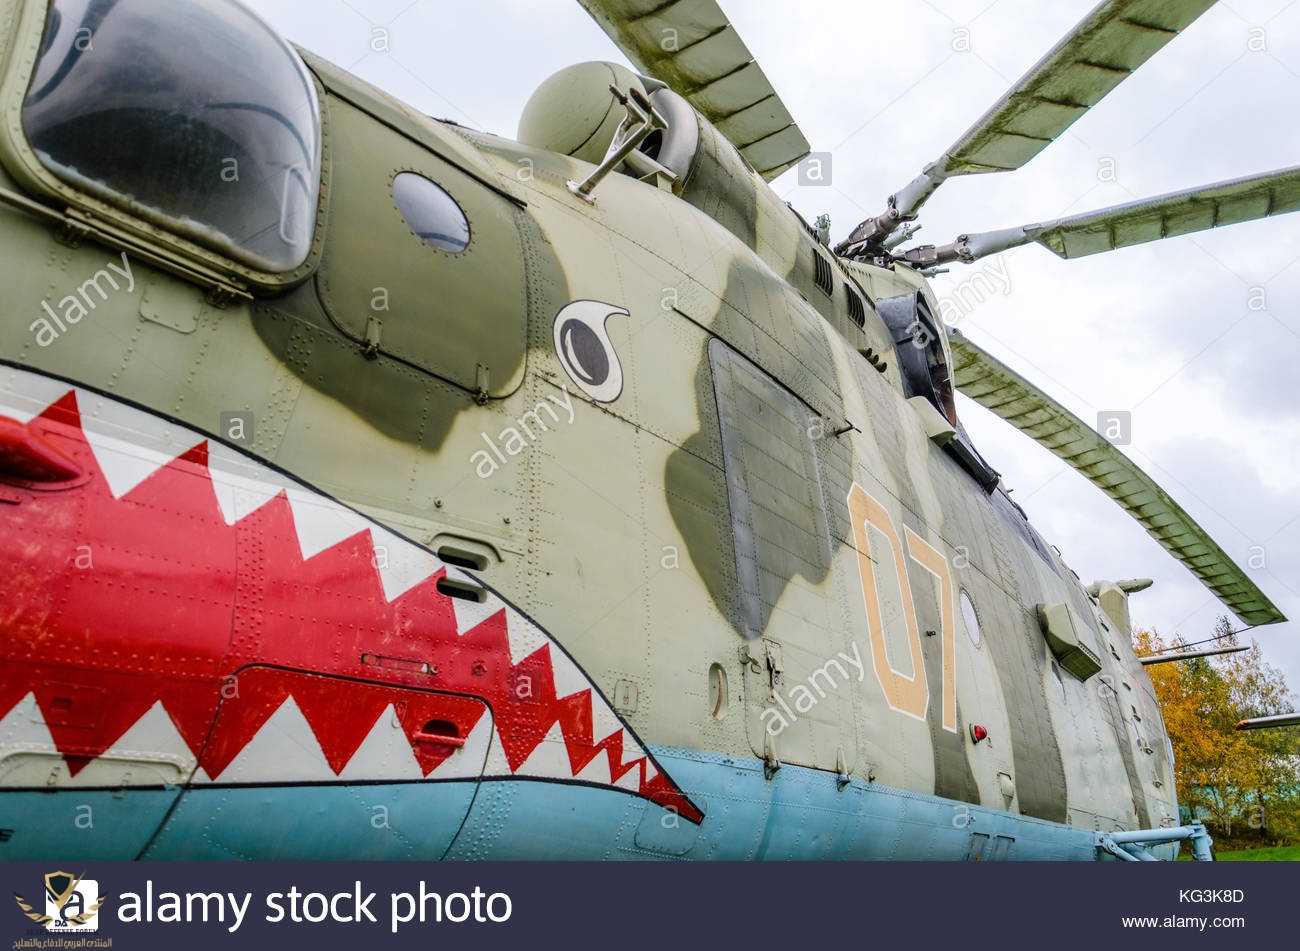 fragmento-del-casco-del-helicoptero-mi-26-sovieticos-pintado-en-las-fauces-de-un-tiburon-kg3k8d.jpg